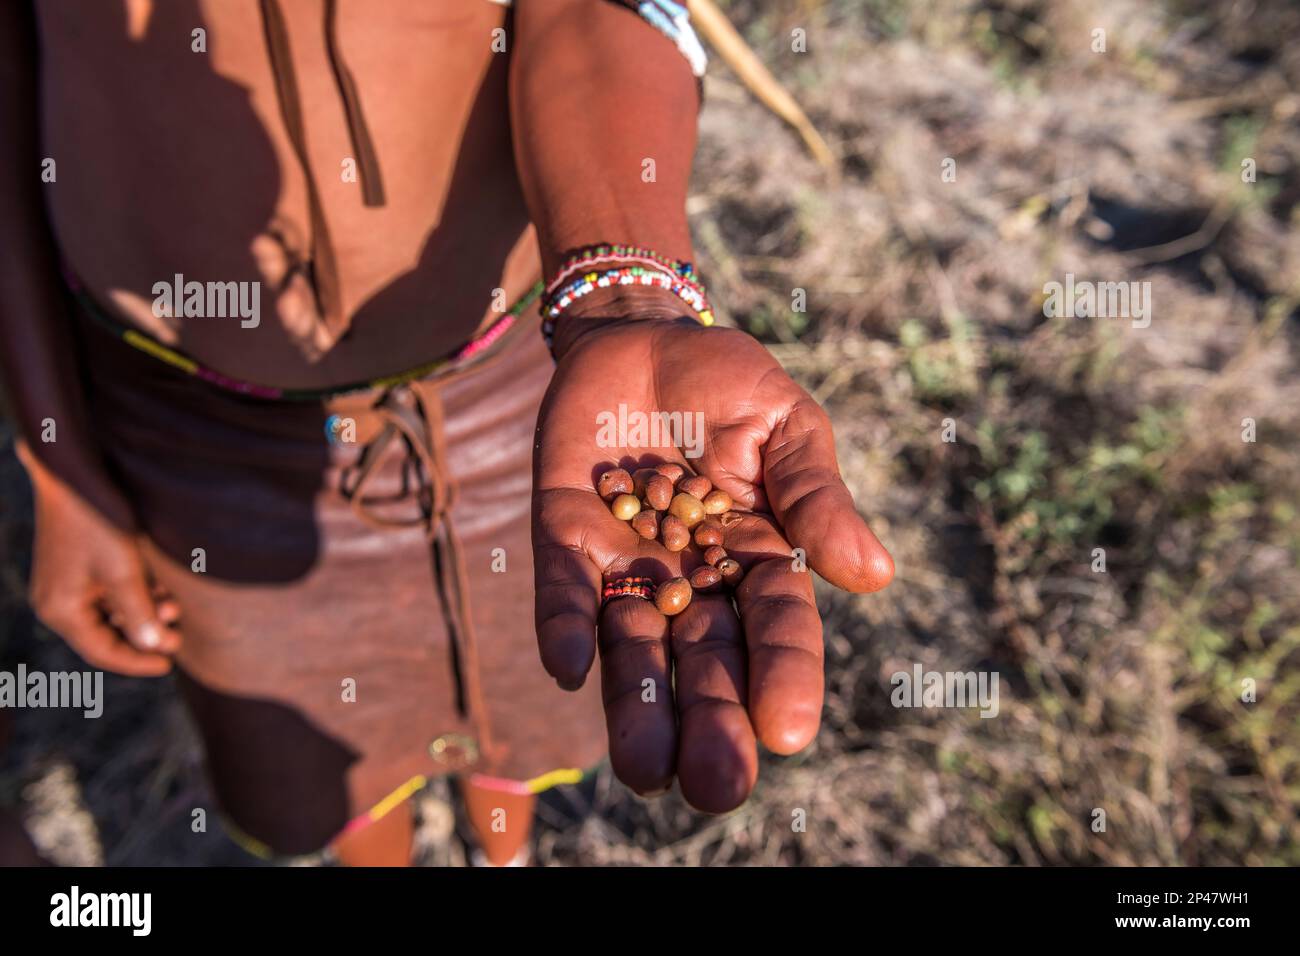 Afrique, Botswana, désert de Kalahari. Les baies sont présentées dans les mains d'un tribesman aîné du peuple Hunter-diviseur !Kung, qui fait partie de la tribu San. Banque D'Images